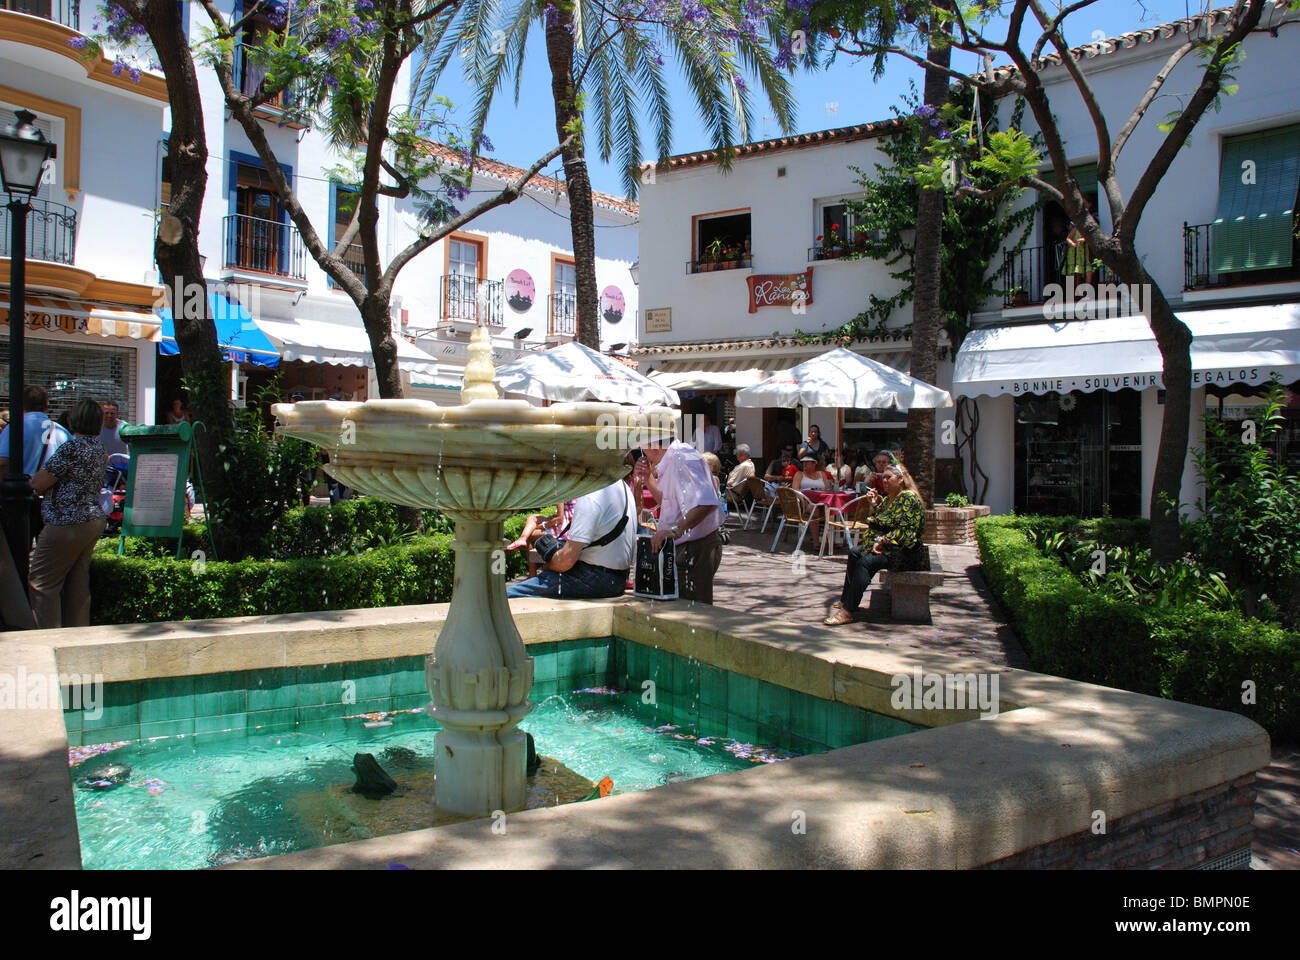 Fountain in the Plaza de la Victoria, Marbella, Costa del Sol, Malaga Province, Andalucia, Spain, Western Europe. Stock Photo